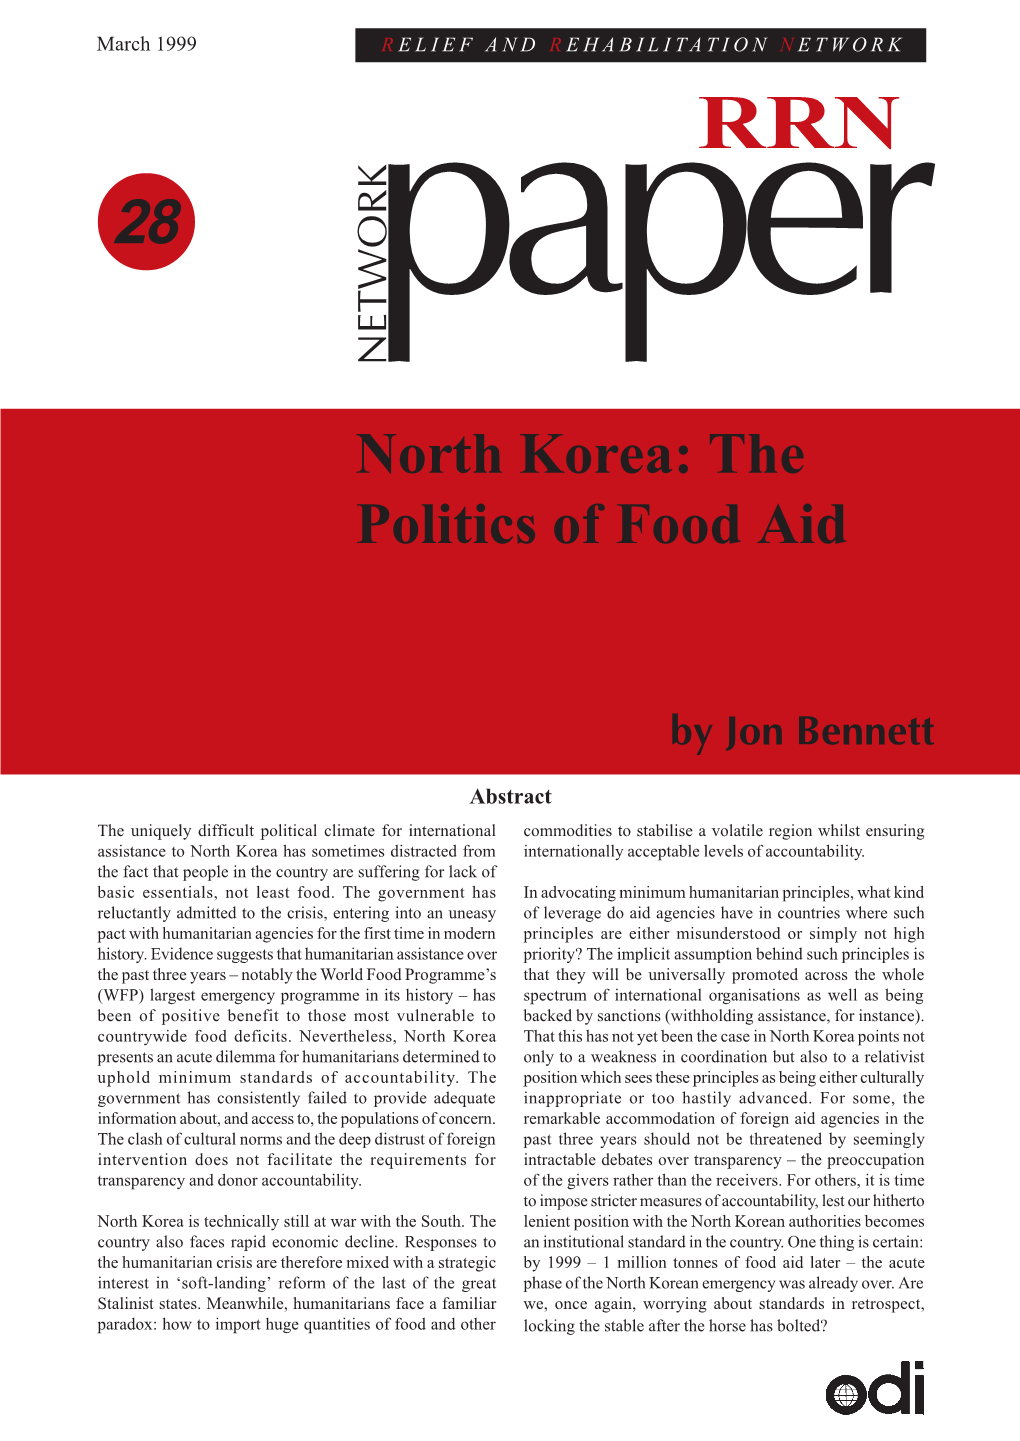 North Korea: the Politics of Food Aid